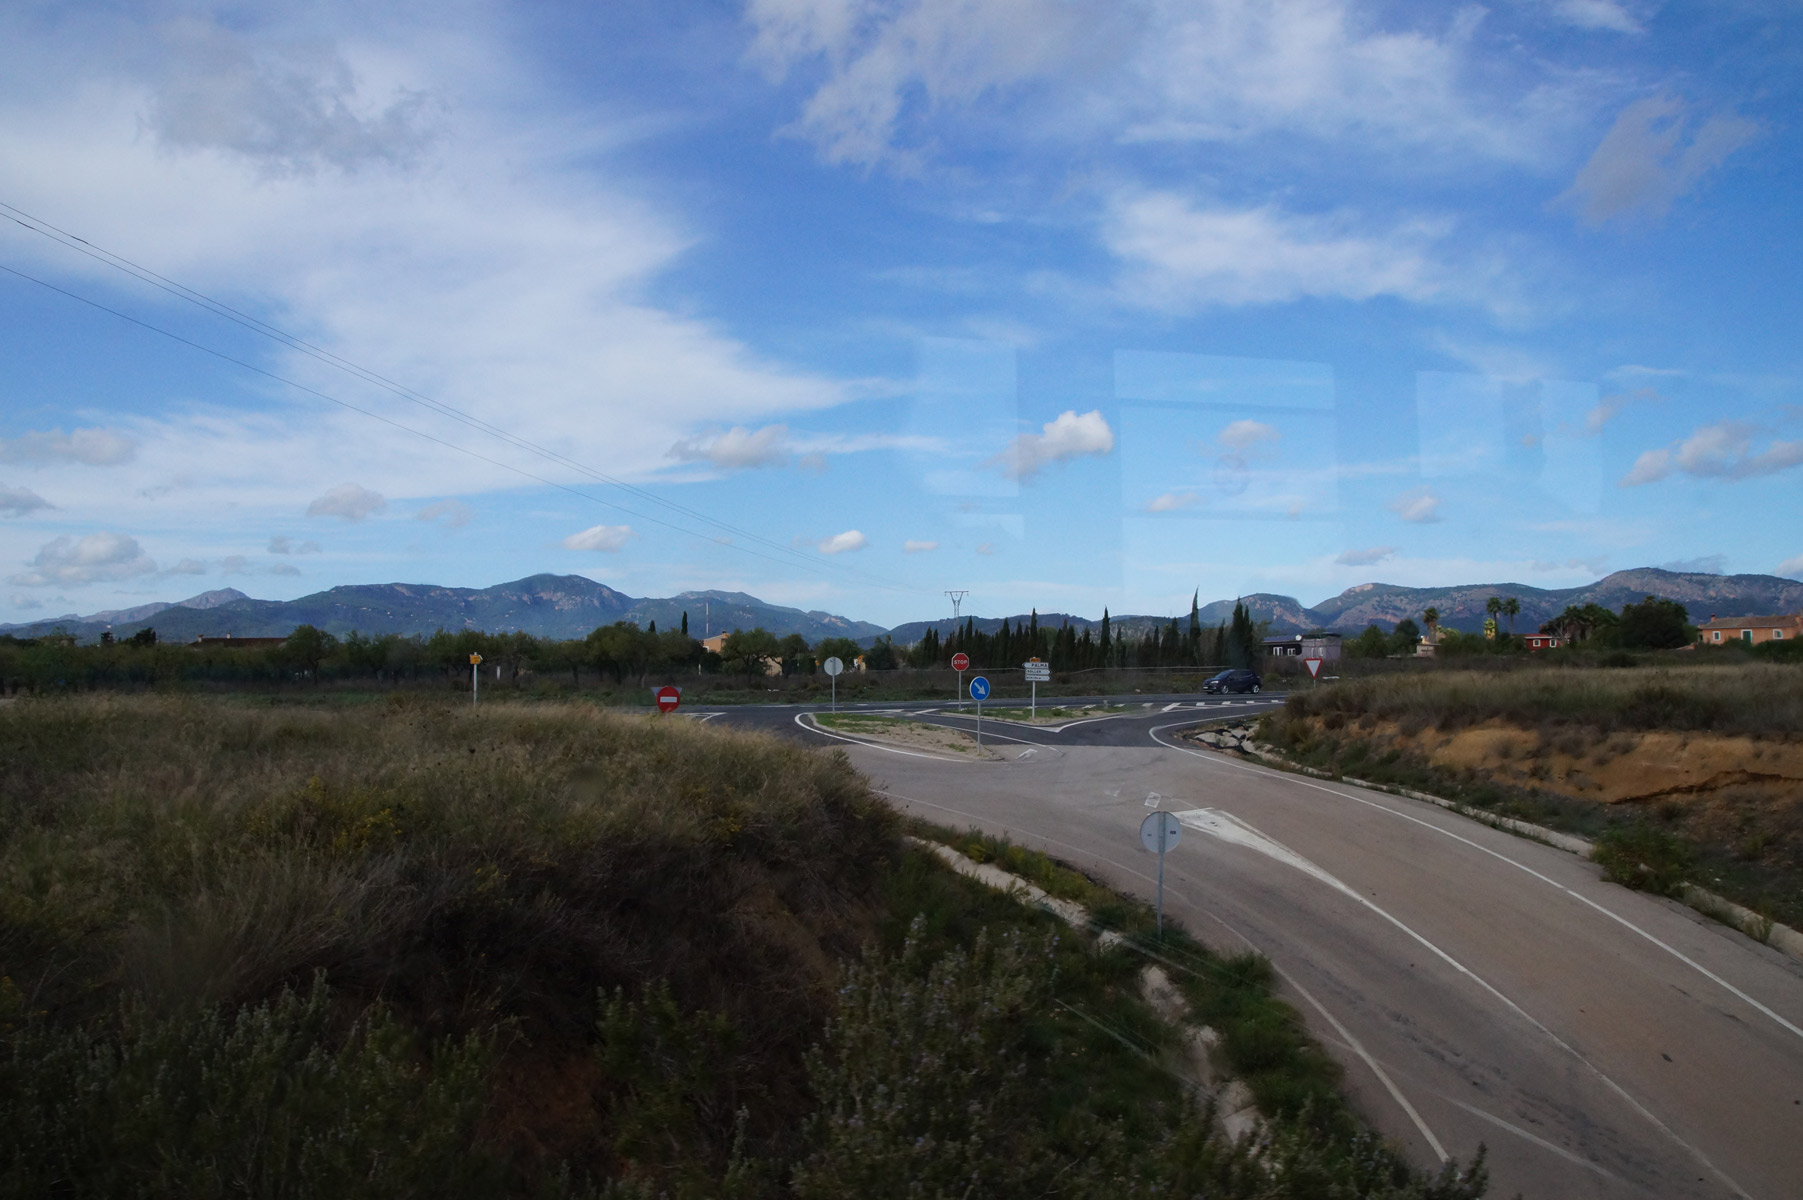 Полупустые автострады, небо и горы.

Испания, Майорка, осень 2019